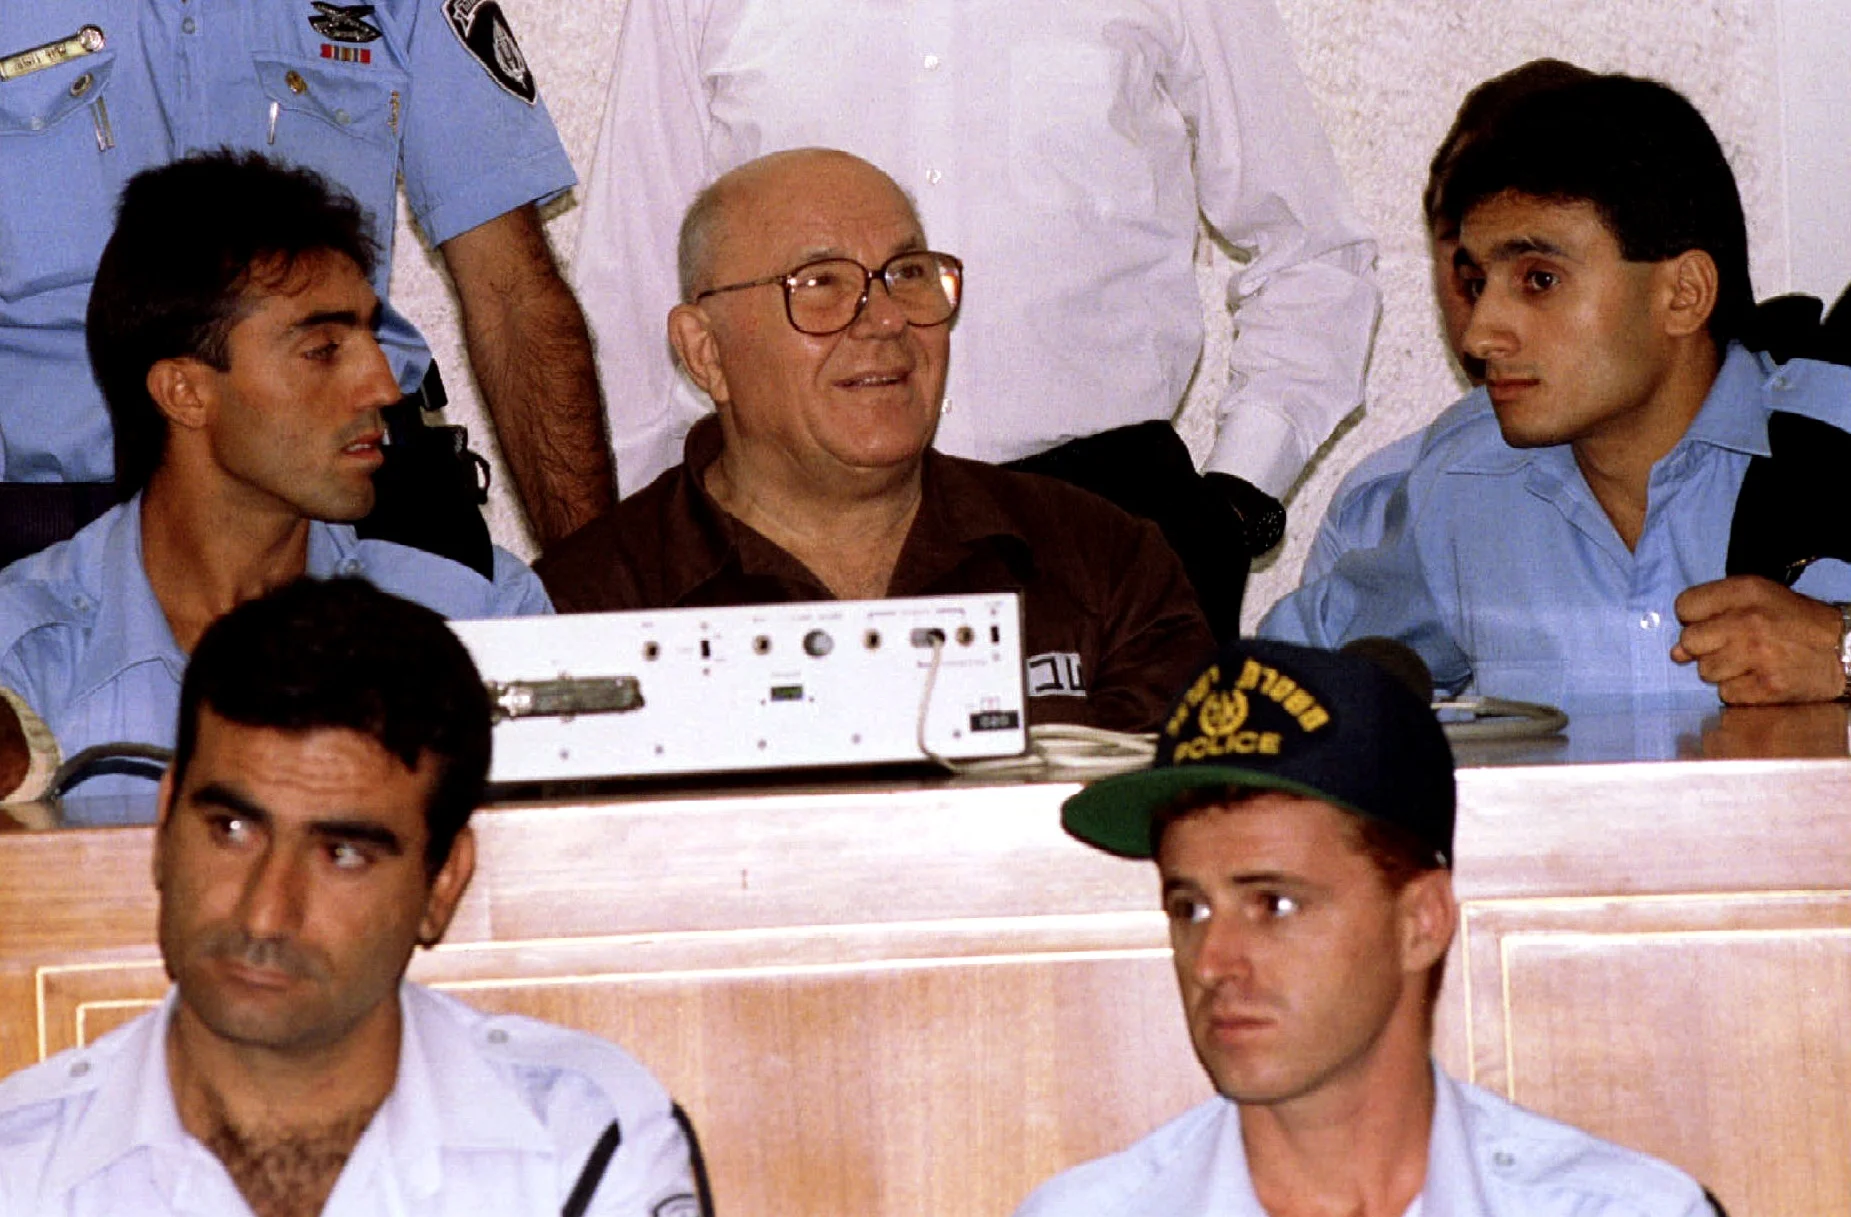 מוקף סוהרים ושוטרים ומחייך בעודו מחכה לקרוא את ההחלטה של יולי 29. דמיאניוק הורשע בשנת 1988 על היותו מפעיל תא הגזים במחנה הריכוז טרבלינקה במלחמת העולם השנייה